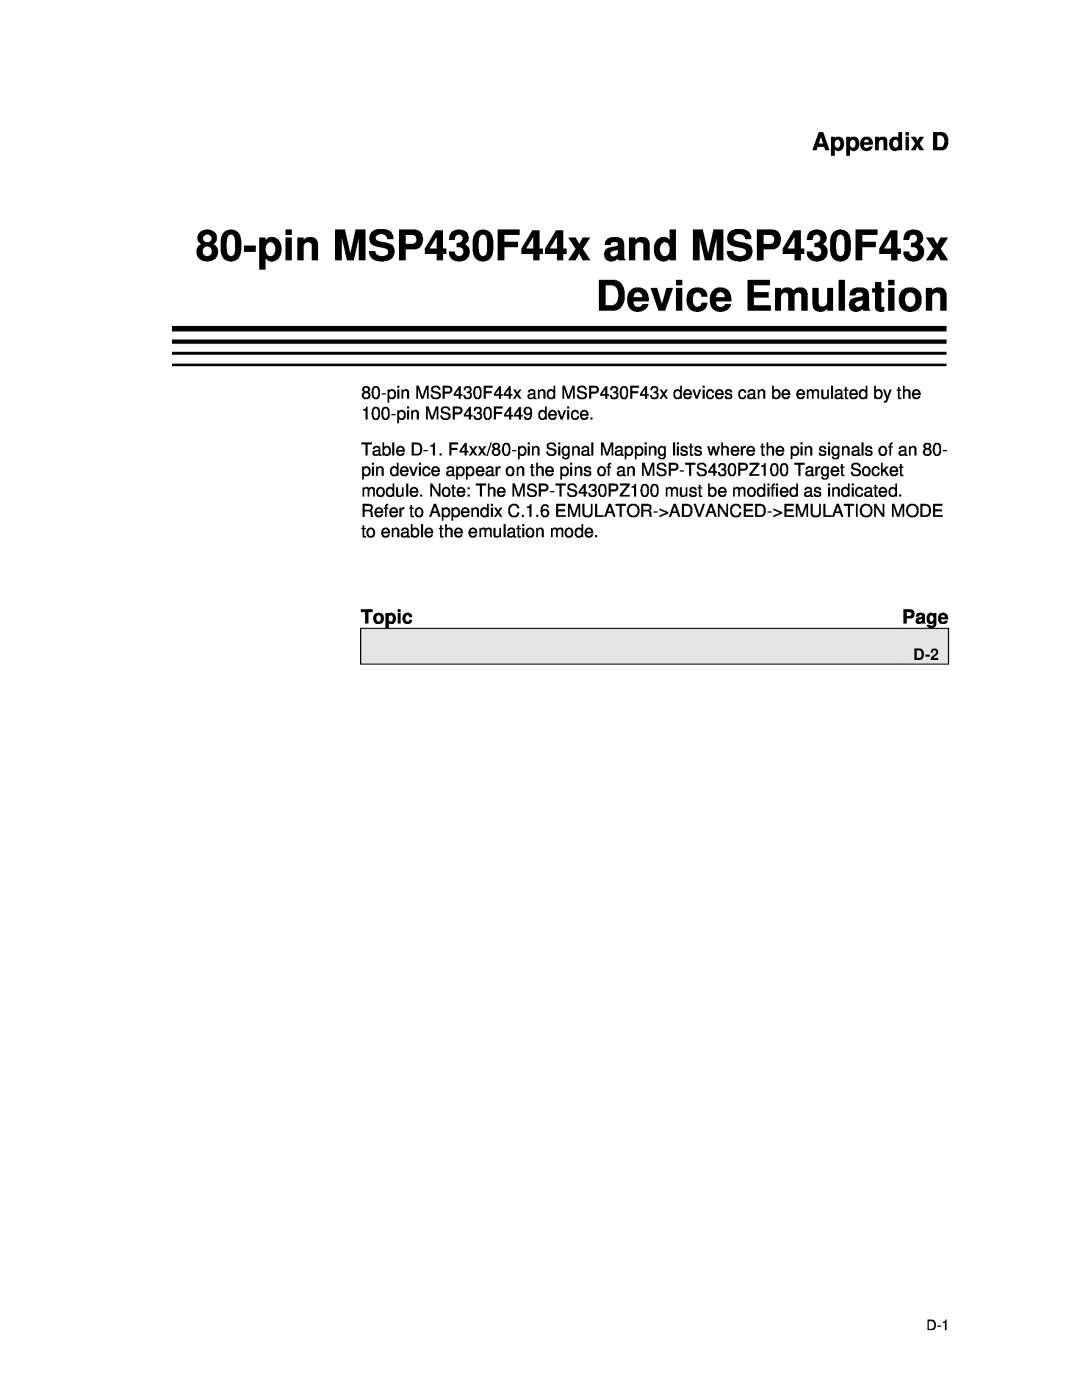 Texas Instruments MSP-FET430 manual pin MSP430F44x and MSP430F43x Device Emulation, Appendix D 